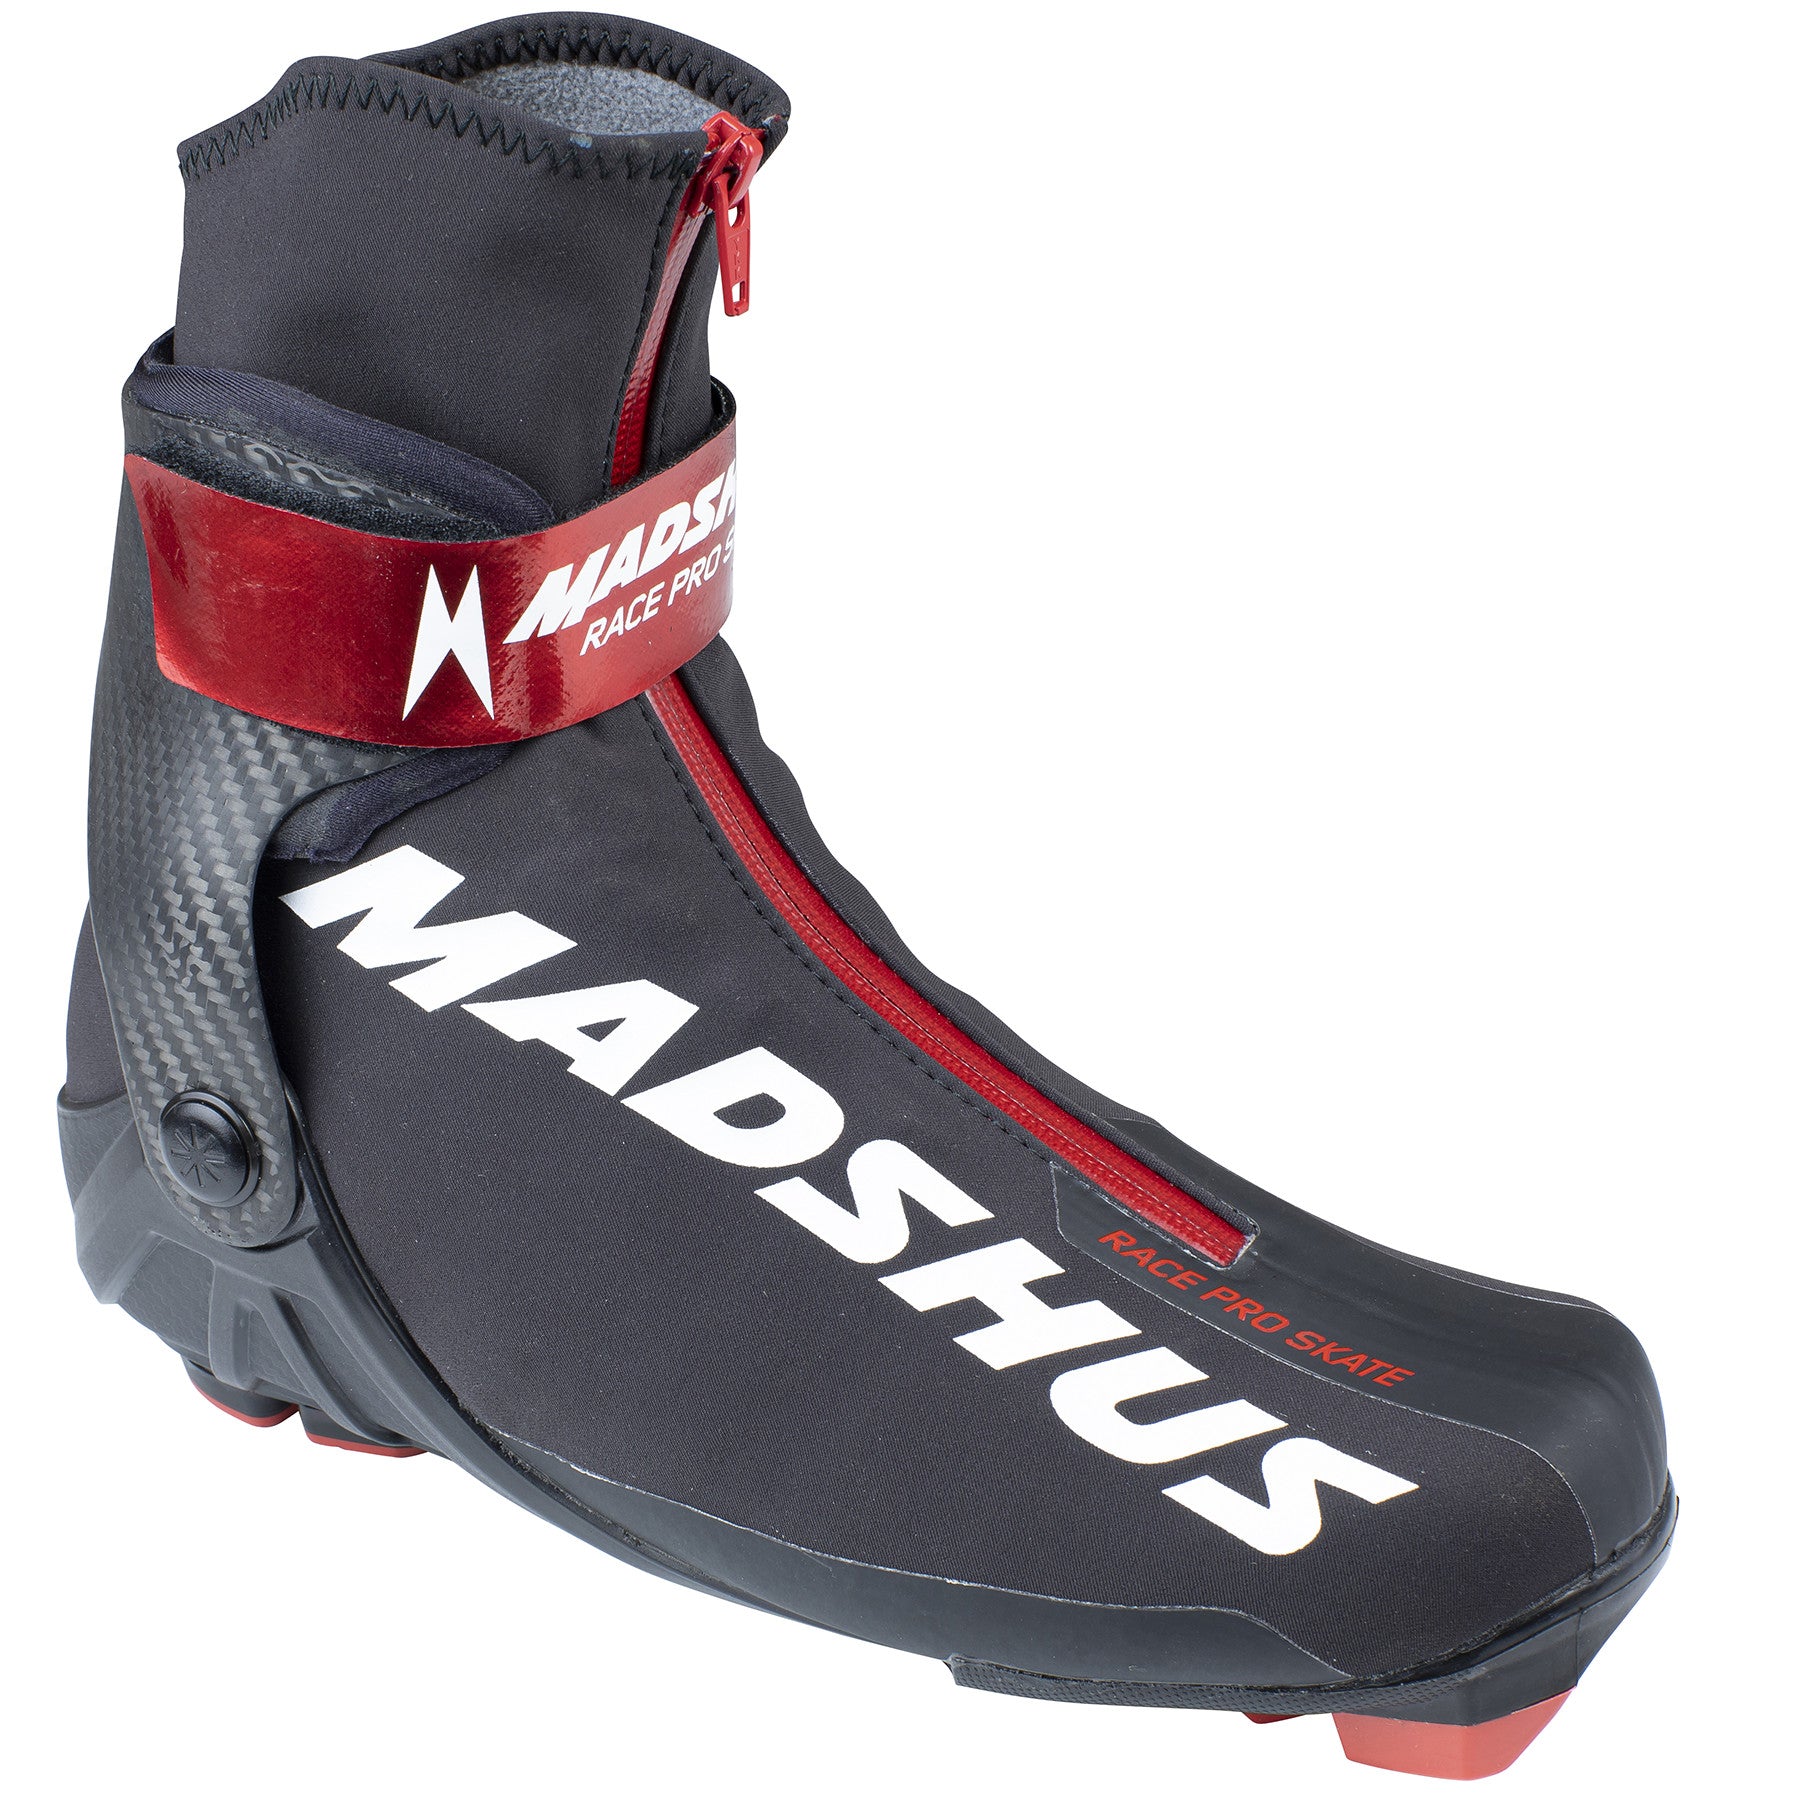 Madshus Race Pro Skate Boot 2021-2022